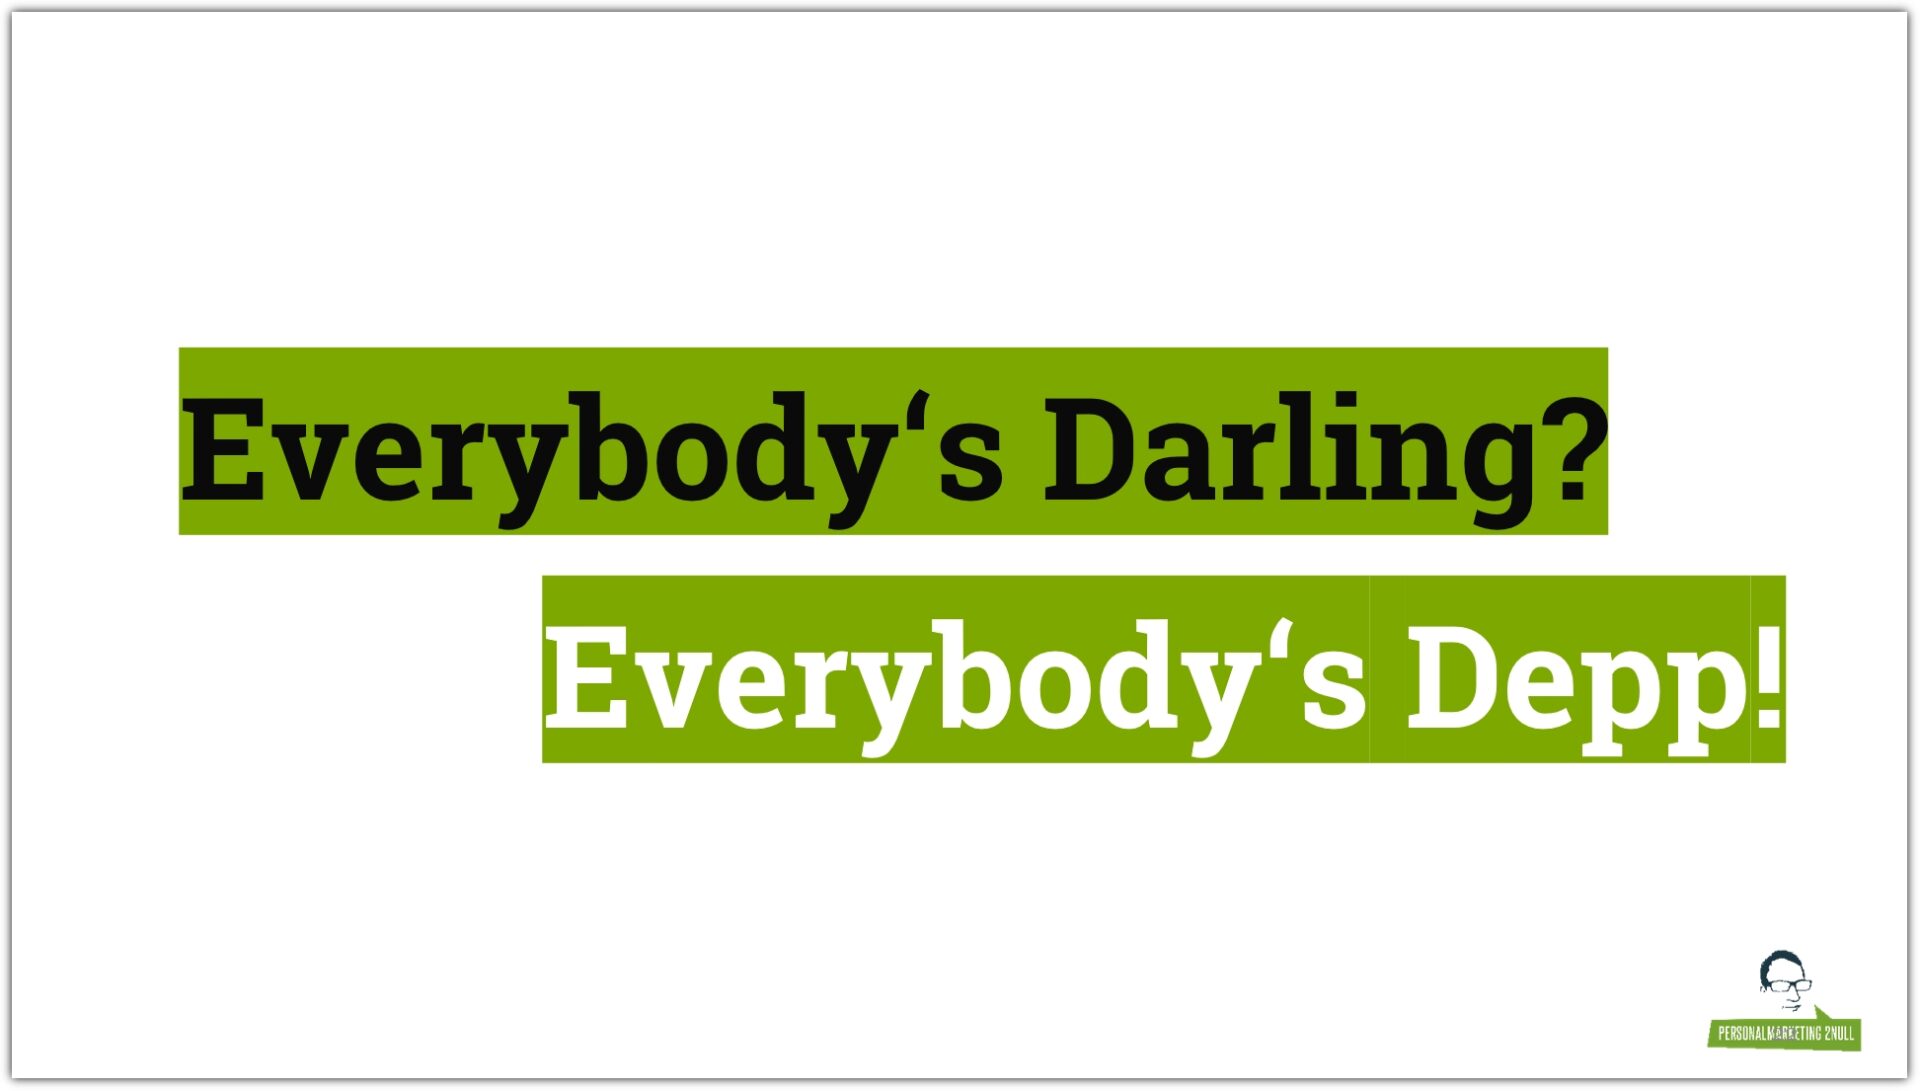 Everybody's Darling is Everybody's Depp - auch im Employer Branding